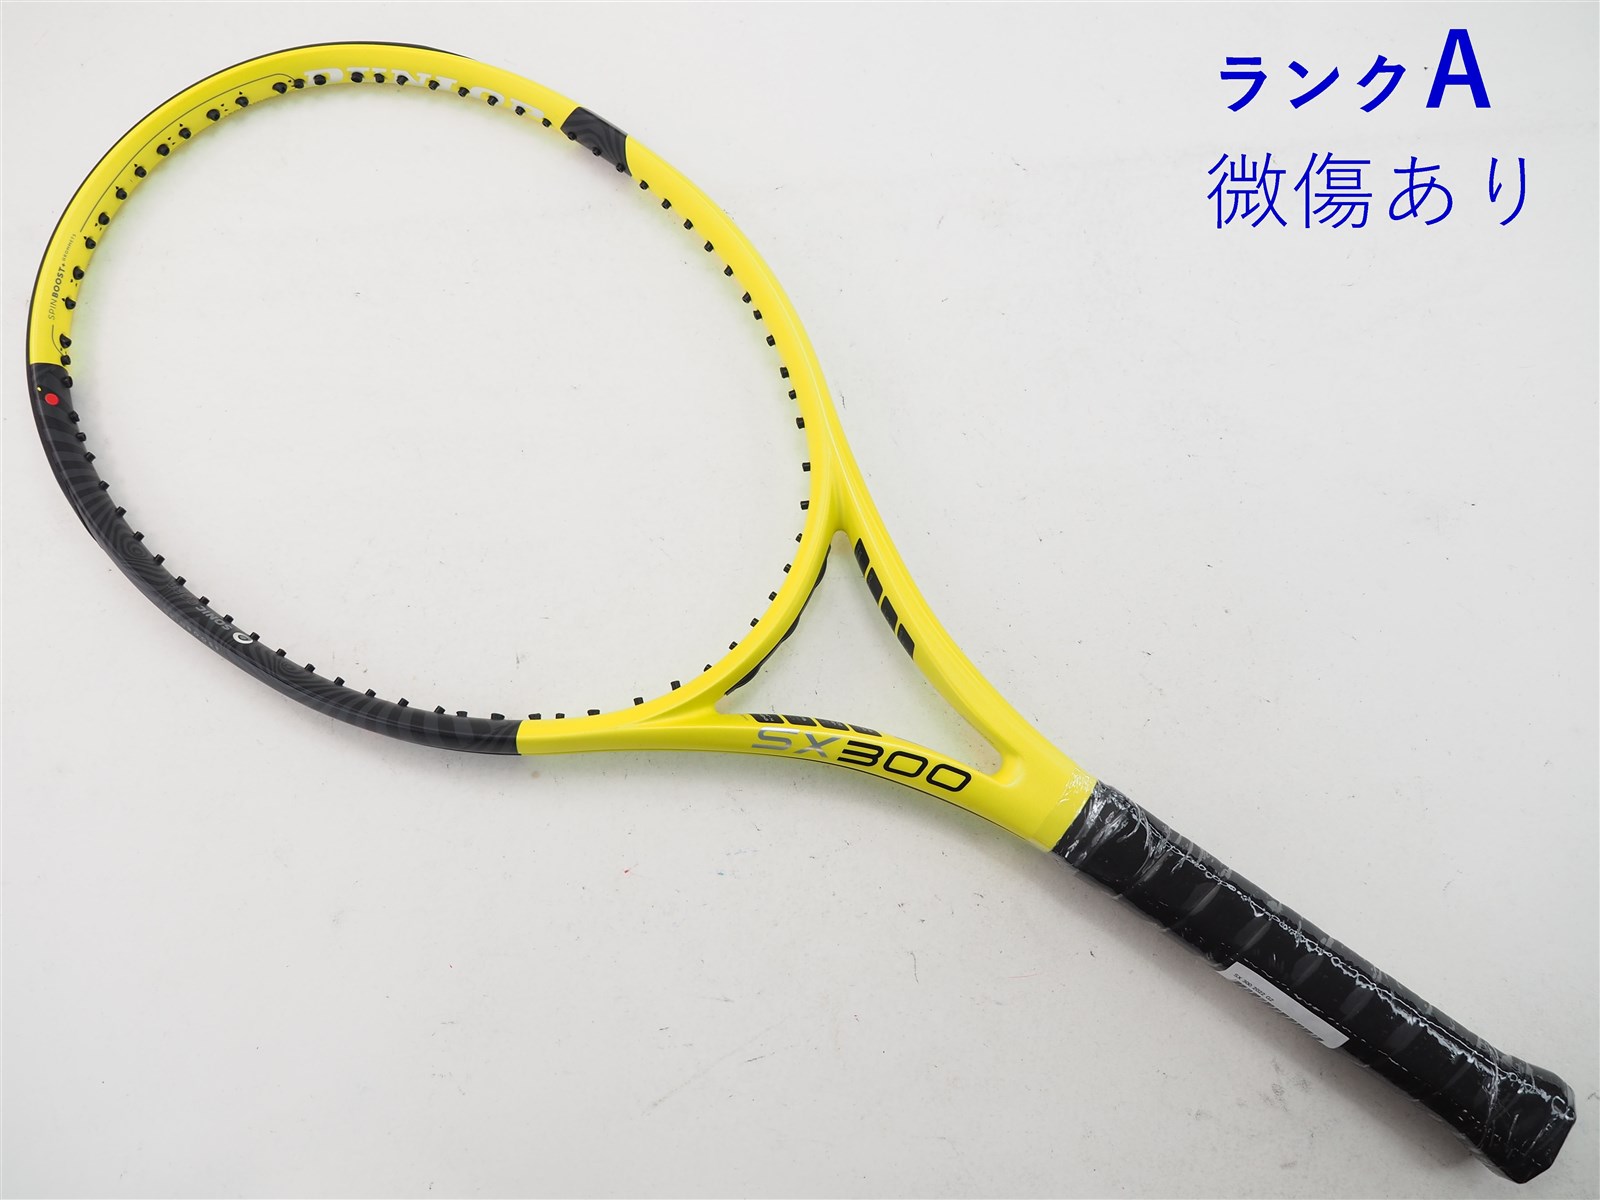 300ｇ張り上げガット状態テニスラケット ダンロップ エスエックス300 2019年モデル (G2)DUNLOP SX 300 2019